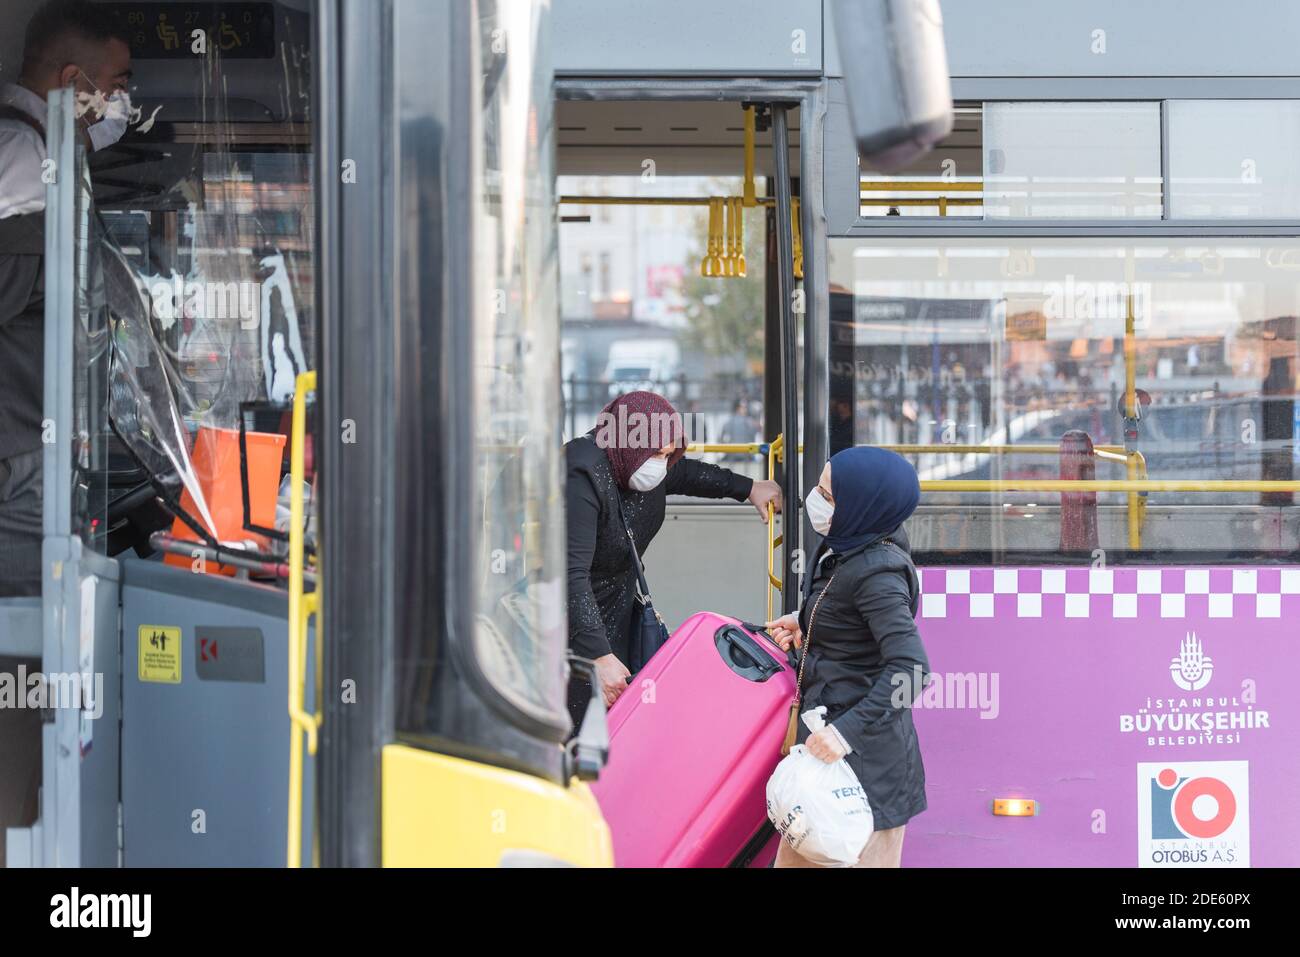 Persone turche non identificate che indossano maschere facciali di protezione si muovono per ottenere Fuori agli autobus durante il coronavirus COVID-19 Epidemic.Istanbul,Turchia.16 novembre 20 Foto Stock